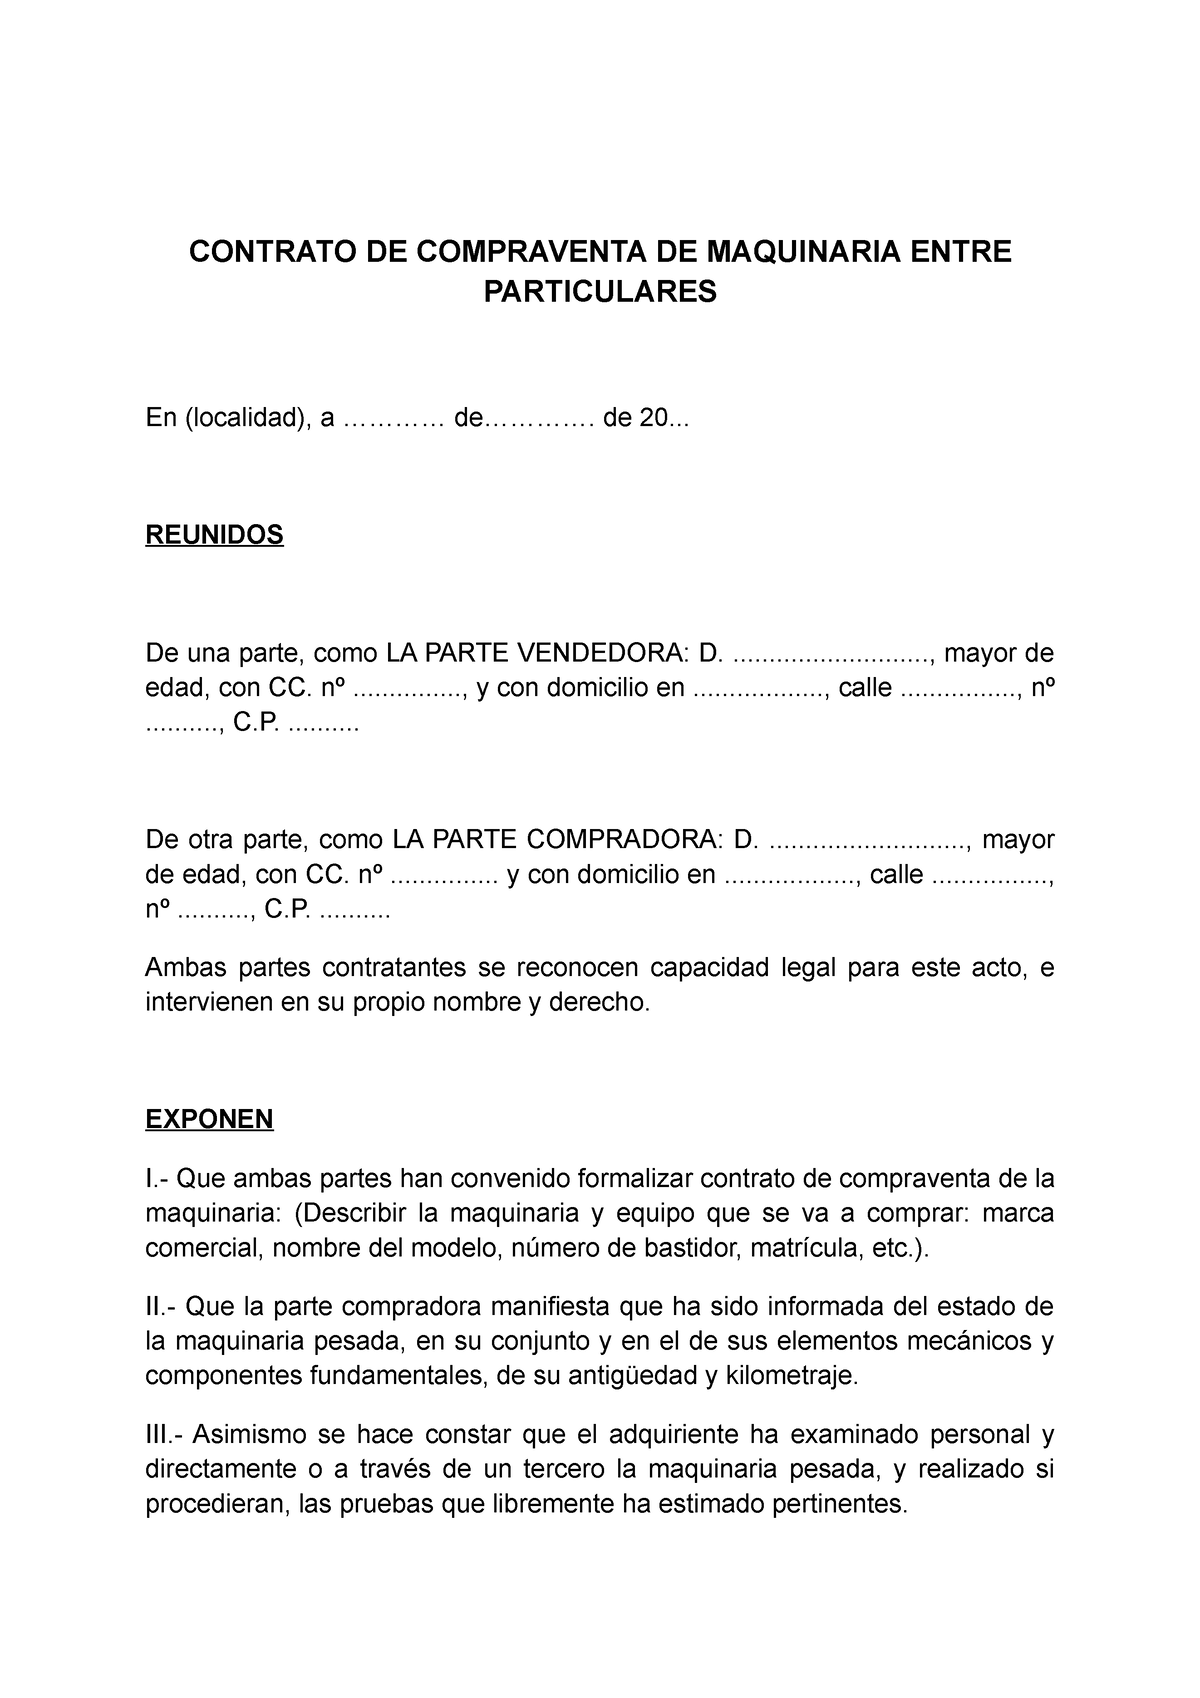 Modelo Contrato De Compraventa De Equipos Y Maquinaria Contrato De Compraventa De Maquinaria 3446